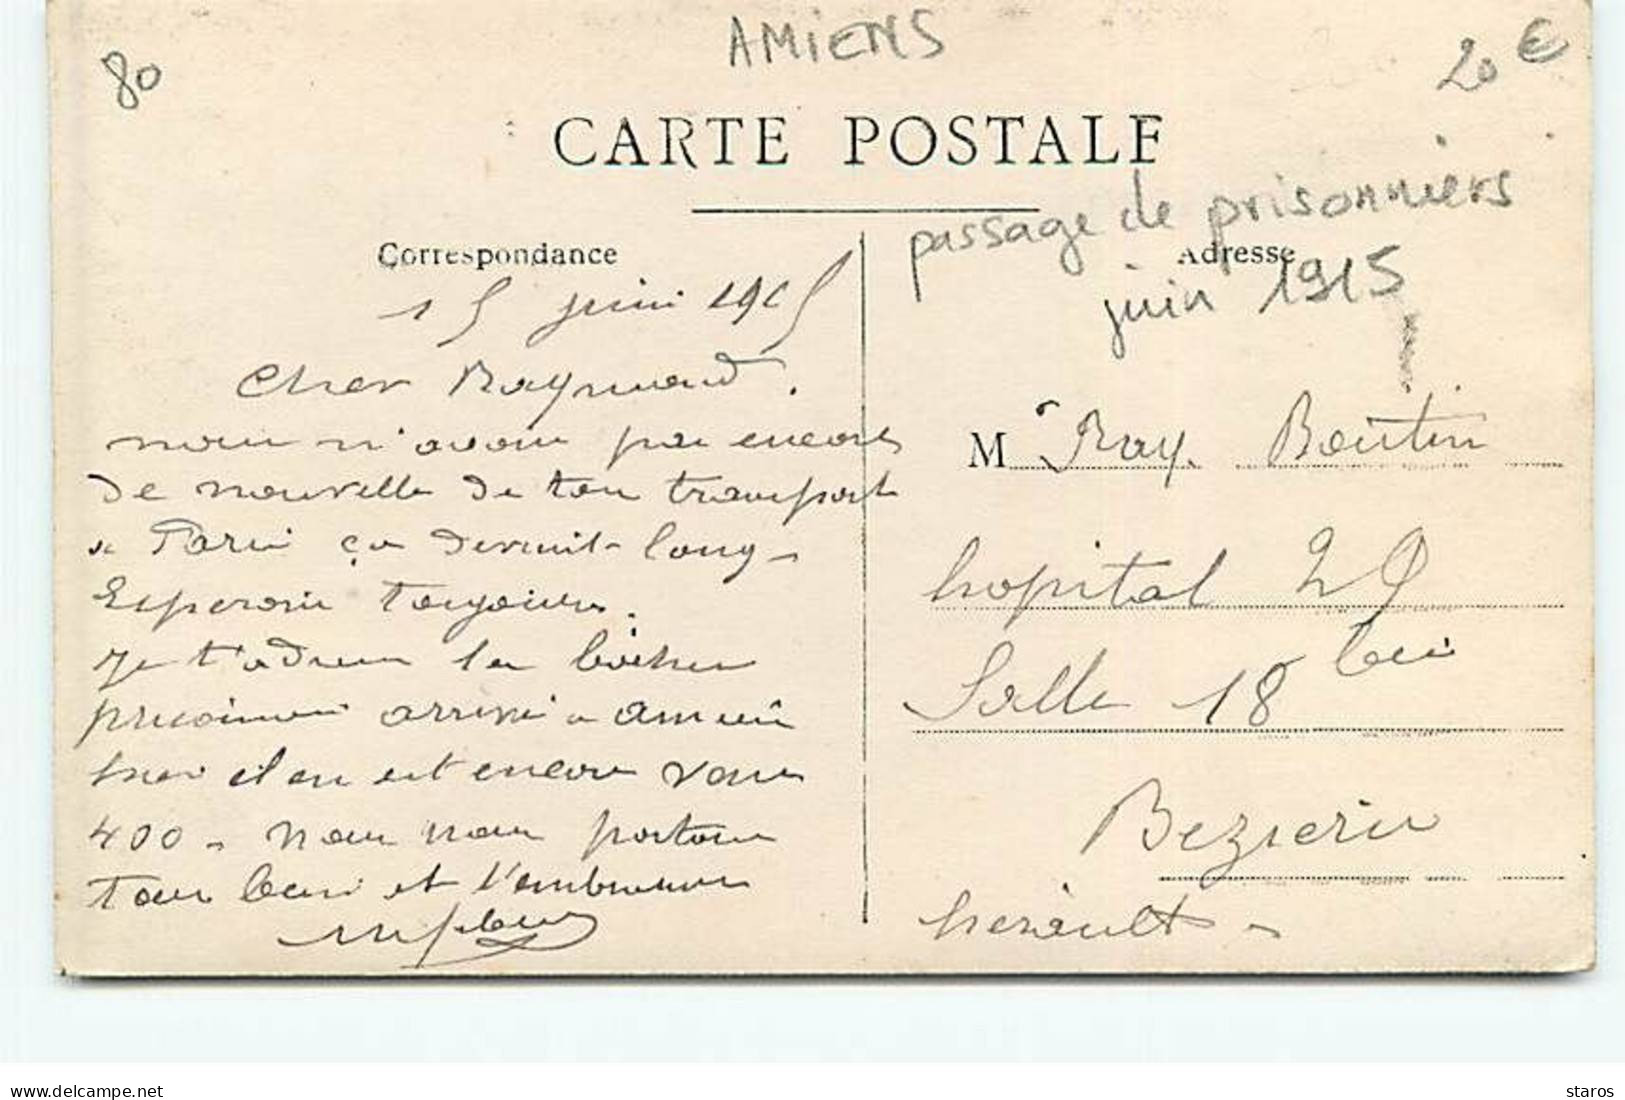 Carte Photo - AMIENS - Passage De Prisonniers Juin 1915 - Société Générale - Amiens